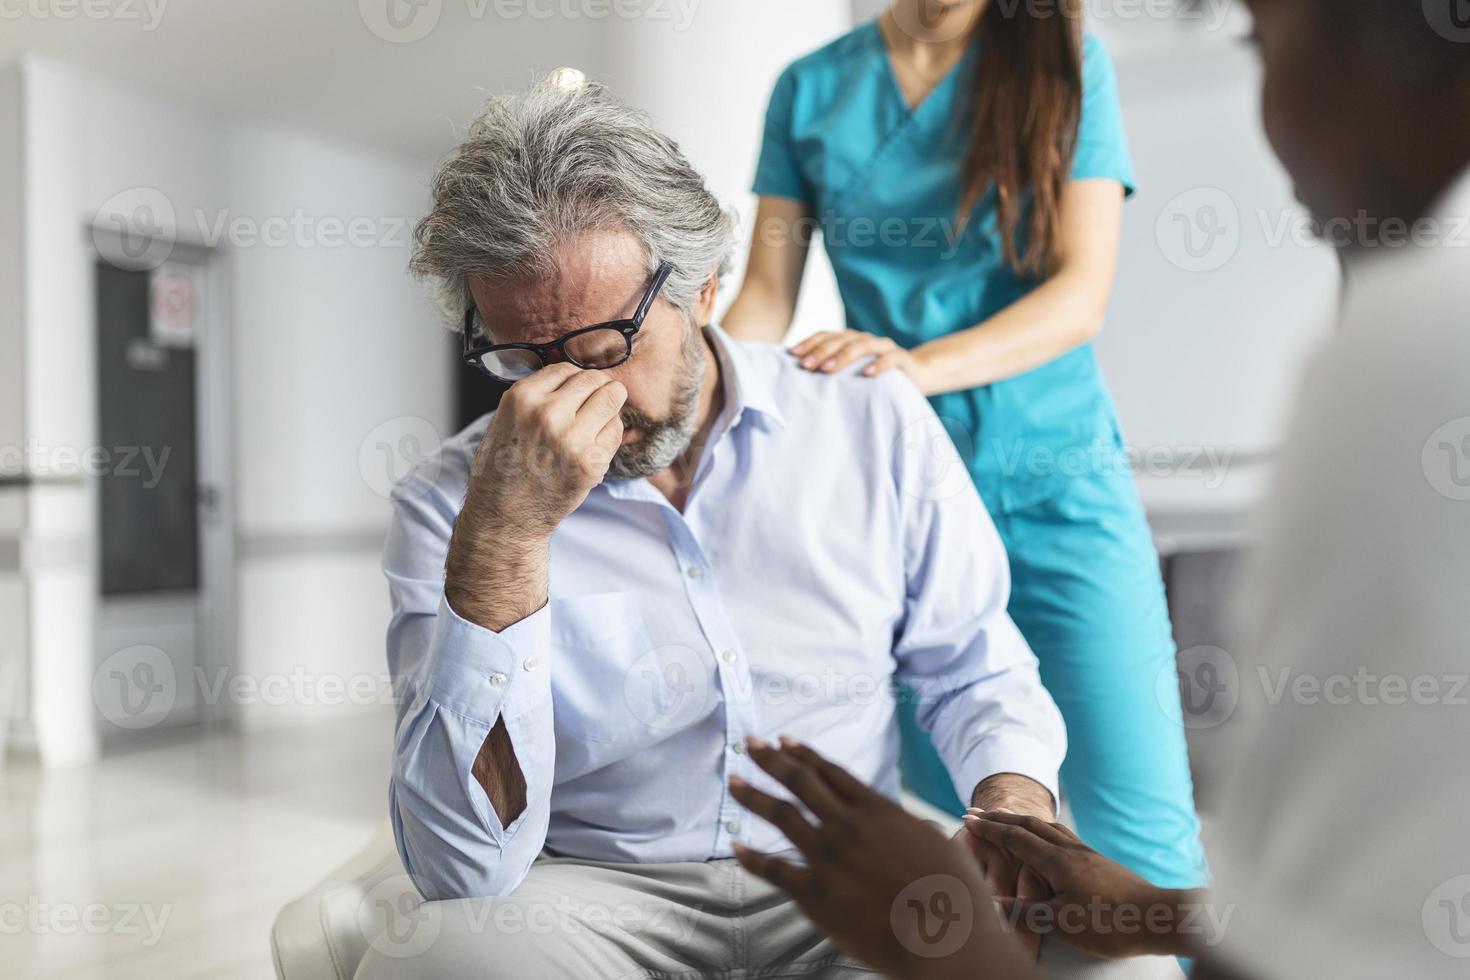 Arzt tröstet verärgerten Mann im Wartezimmer des Krankenhauses. Patient erhält schlechte Nachrichten, er ist verzweifelt und weint, Arzt unterstützt und tröstet seine Patientin mit Mitgefühl. foto